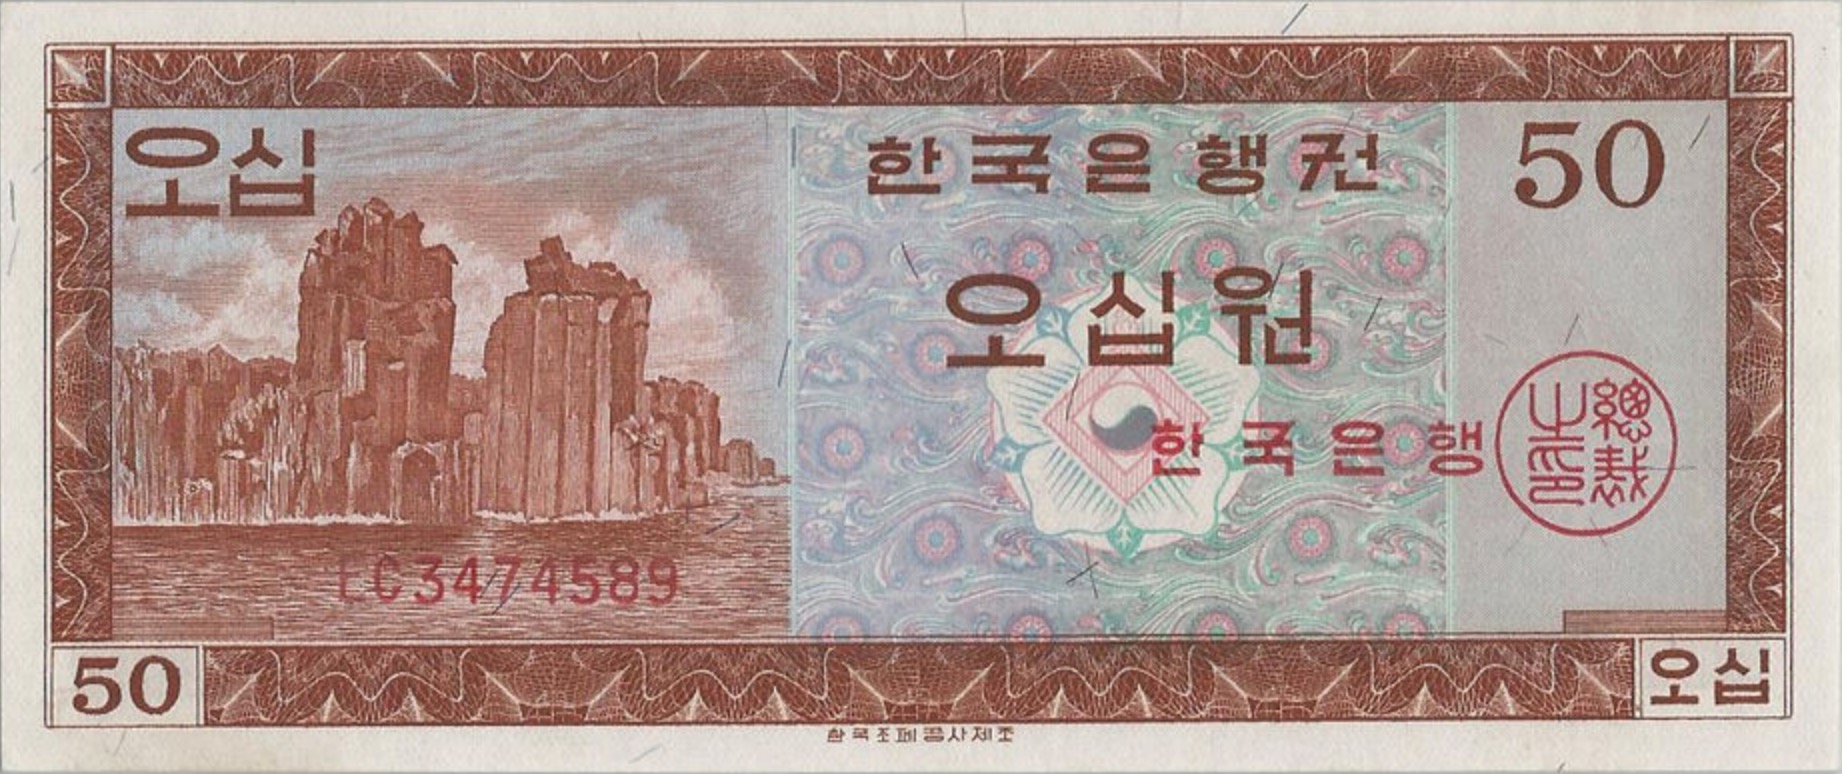 50 South Korean won banknote (Haegeumgang)